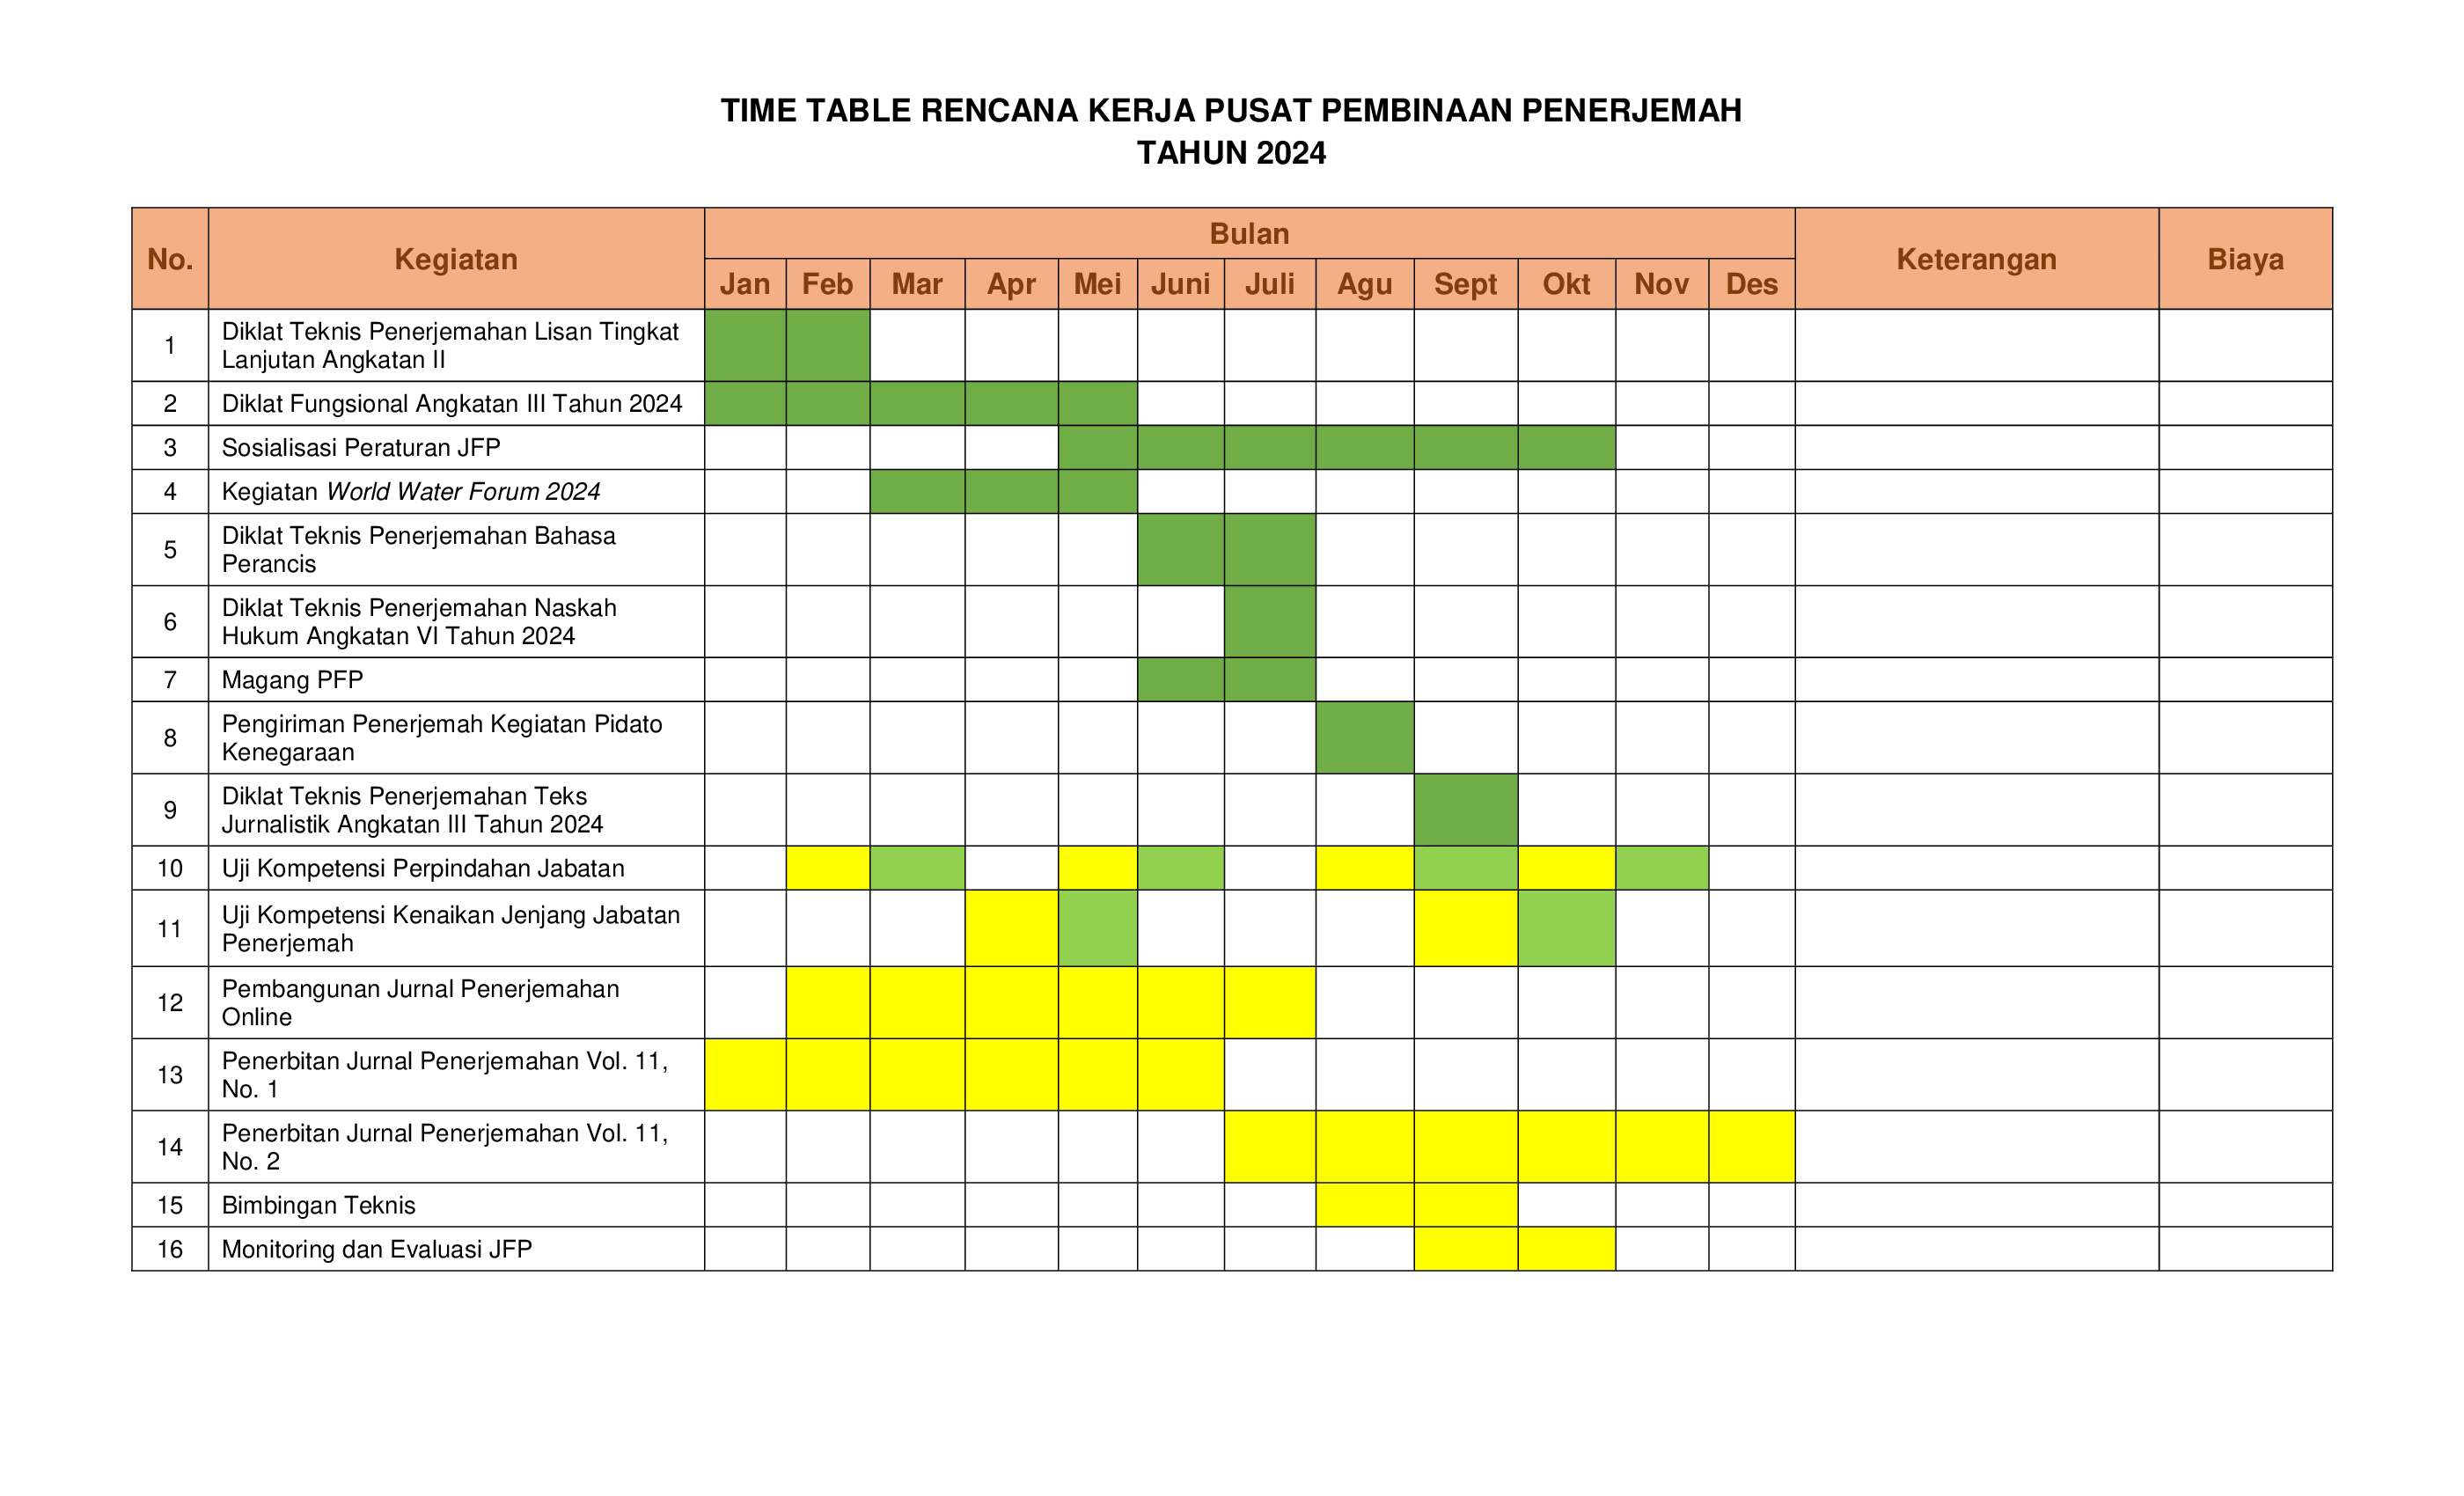 Time Table Rencana Kerja Pusat Pembinaan Penerjemah Tahun 2024